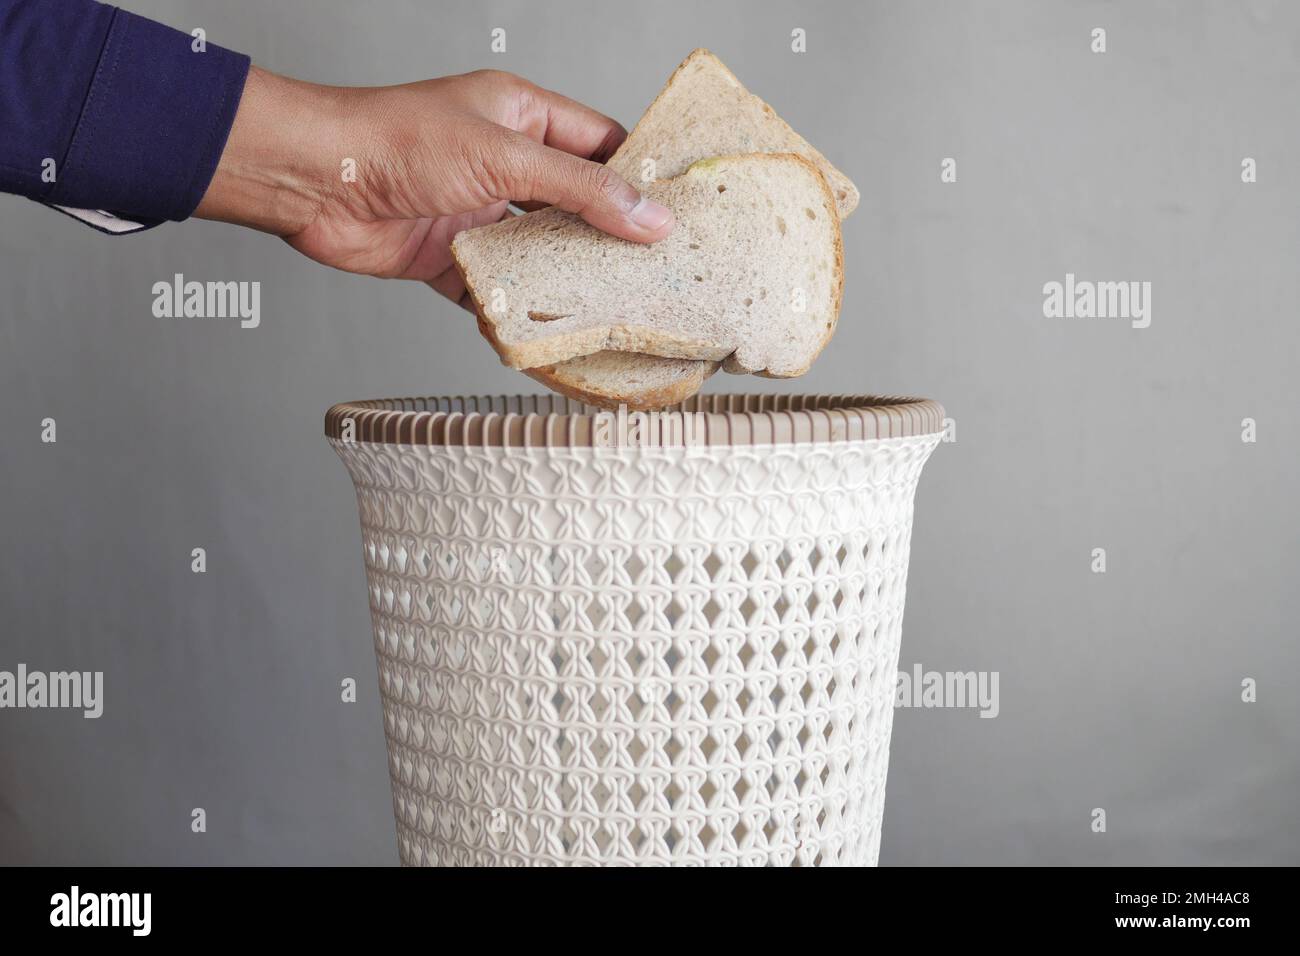 jeter le vieux pain dans une poubelle Banque D'Images